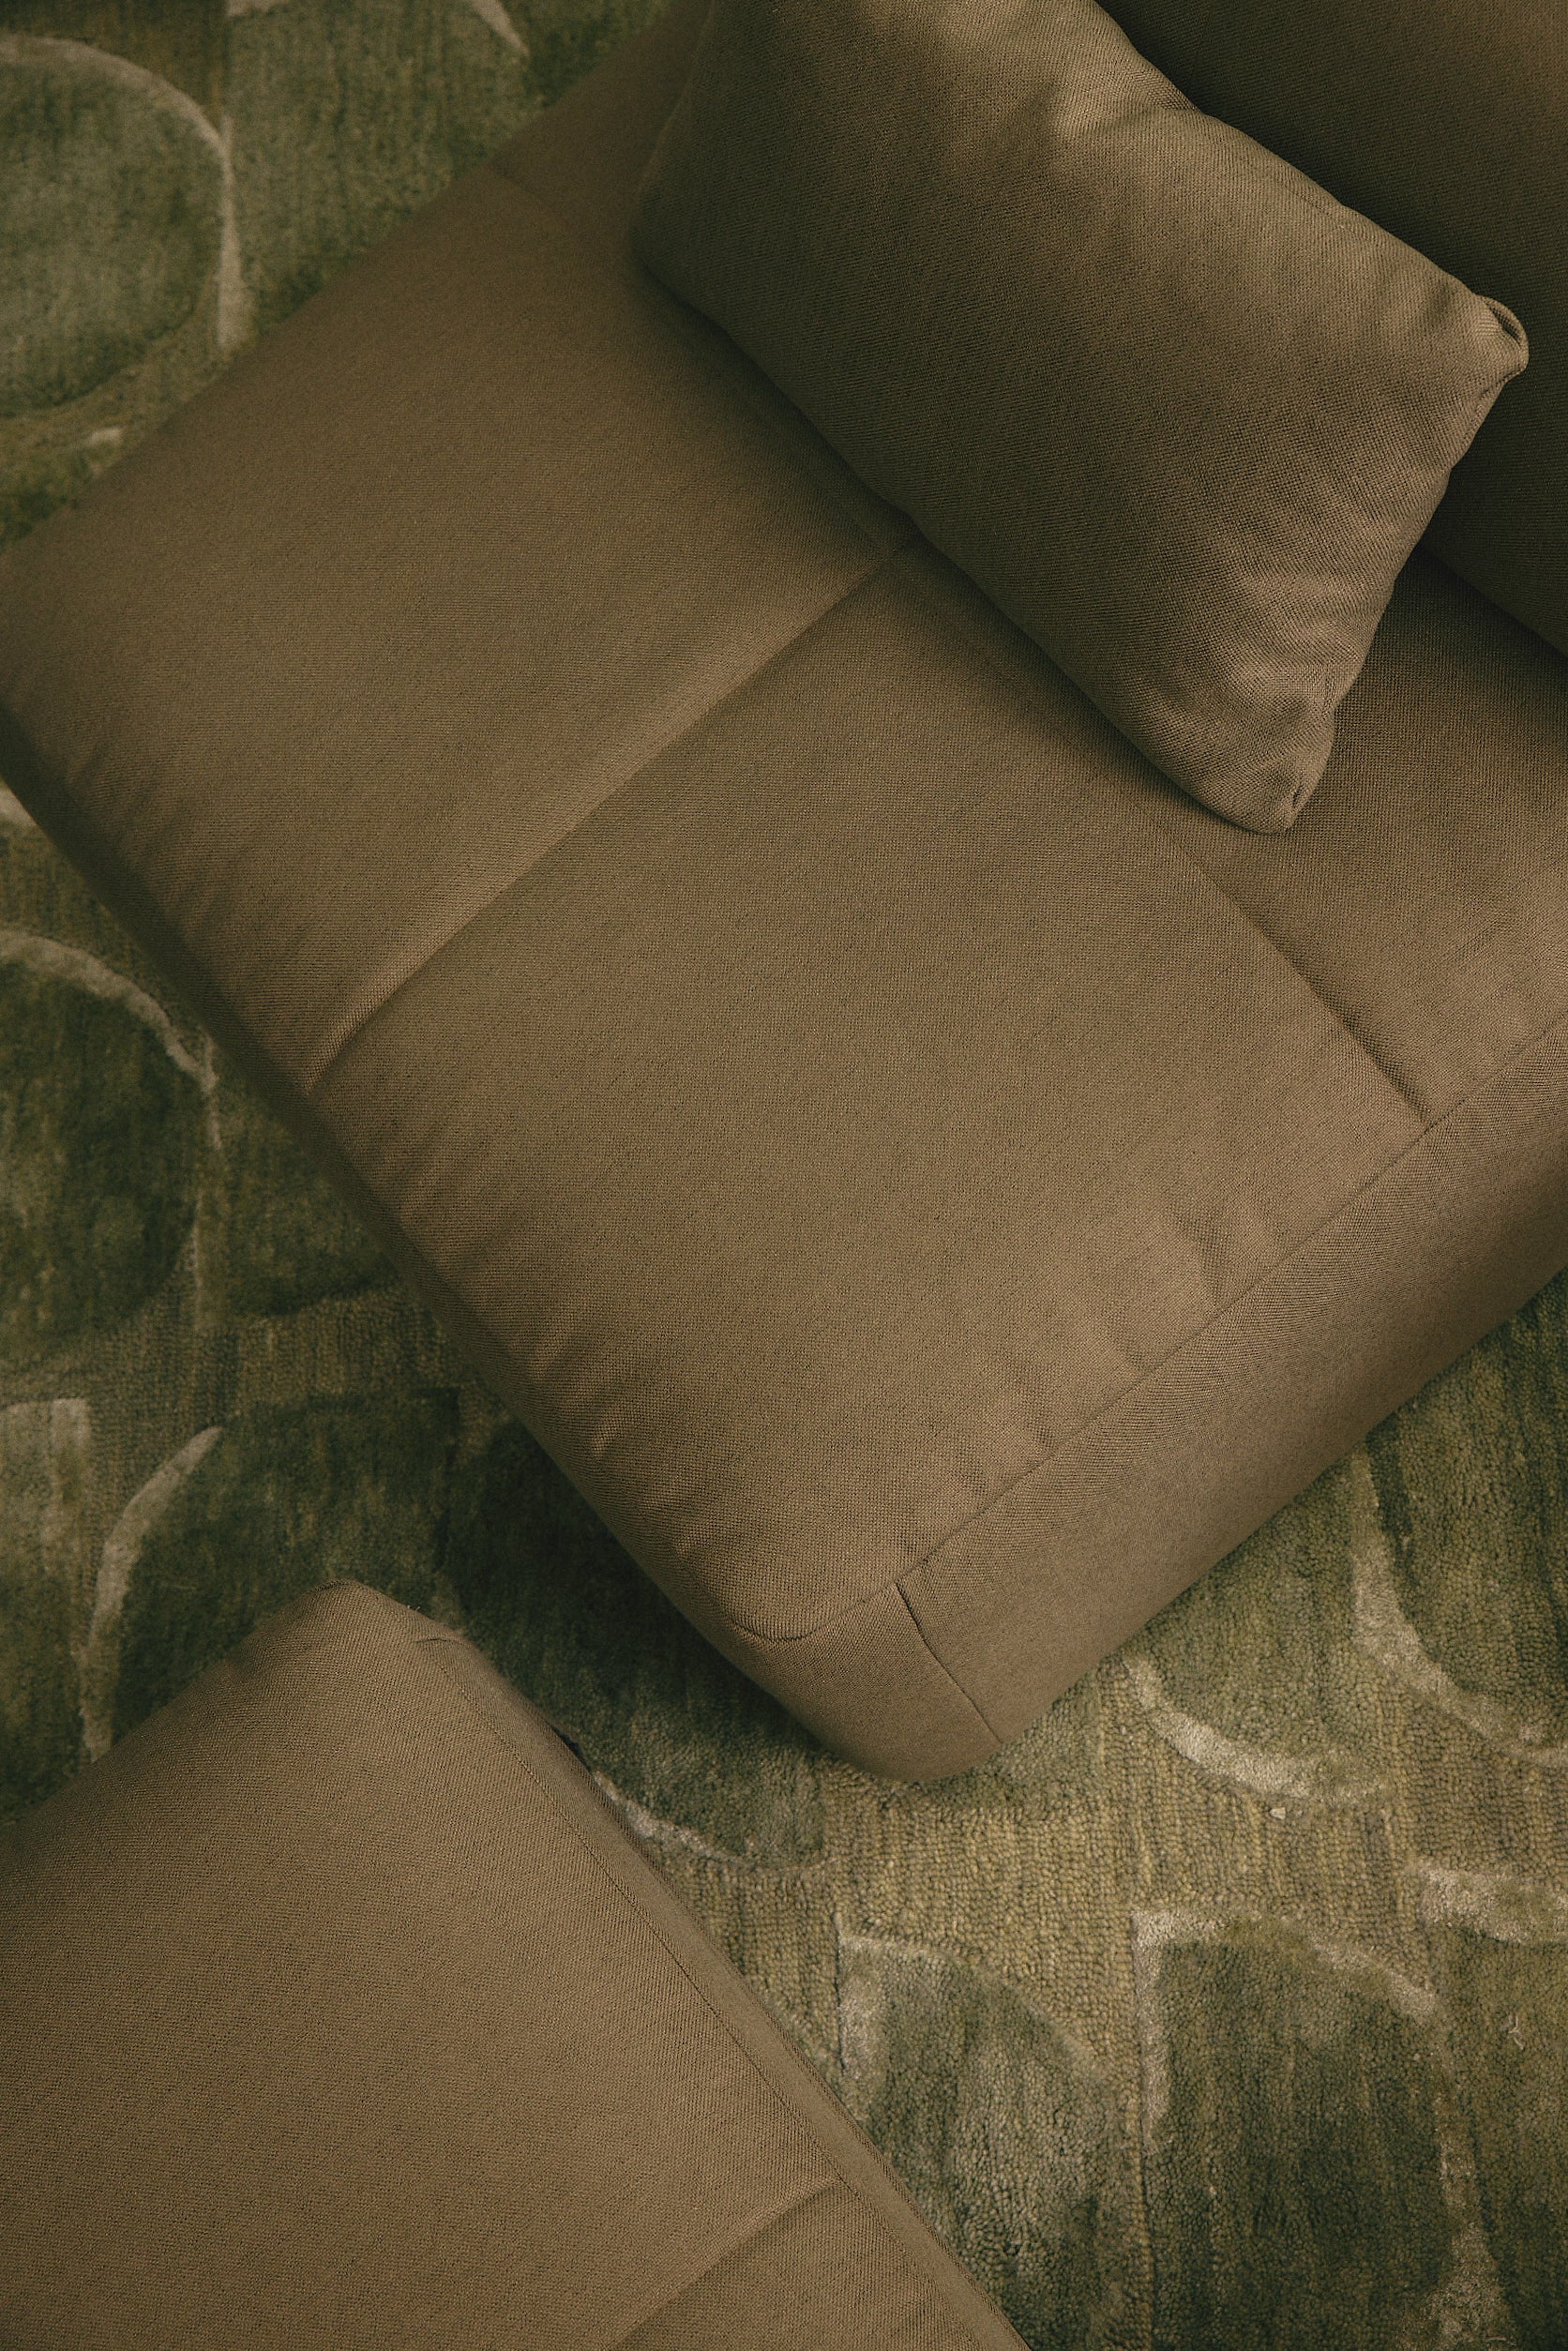 Bandeja para sofa Eva – Classic Home